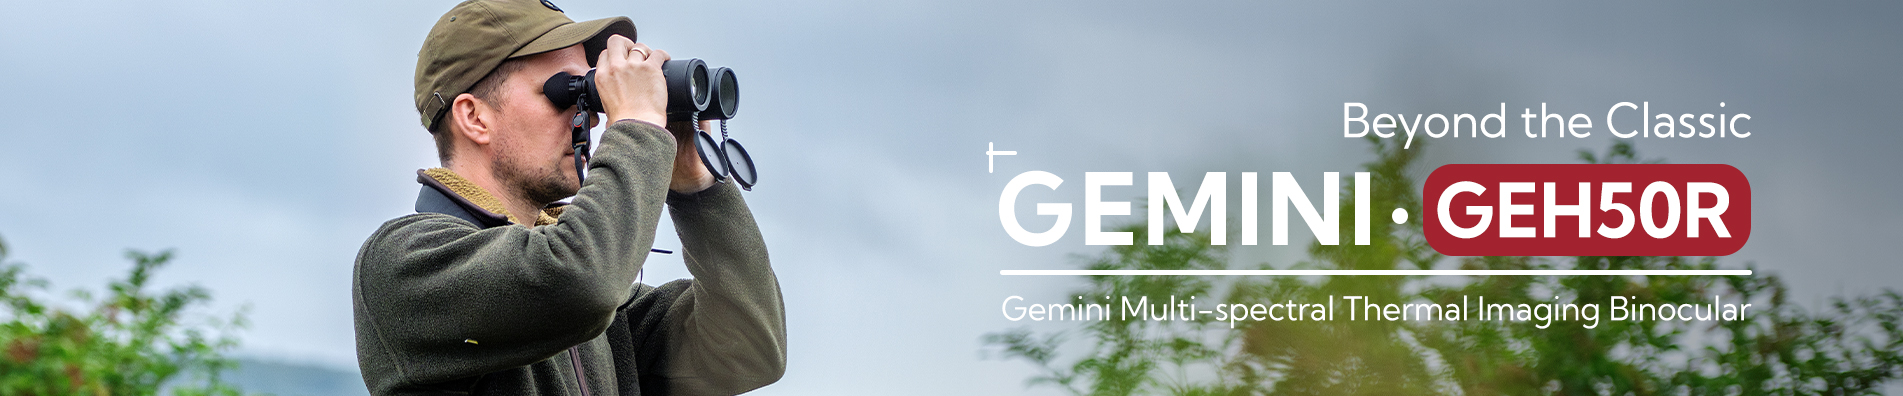 Thermal Imaging Binocular Gemini Series- GEH50R